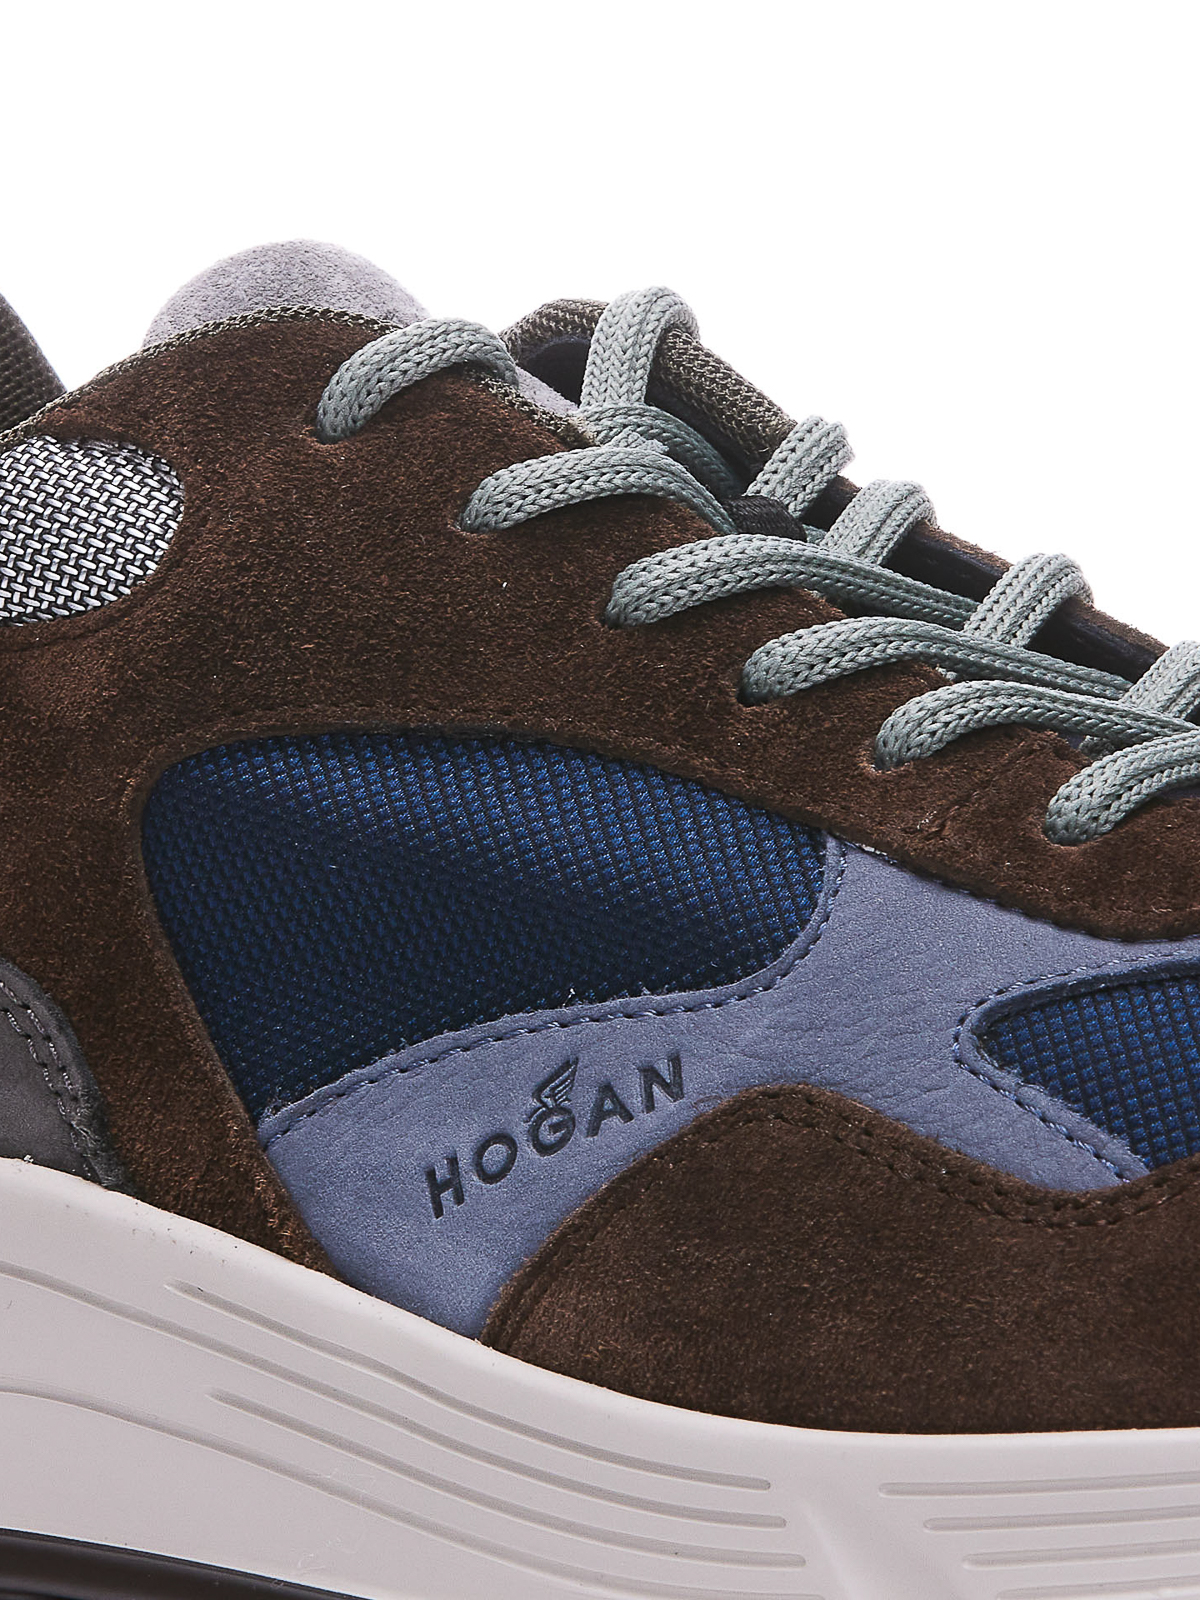 Shop Hogan Hyperlight Sneakers In Marrón